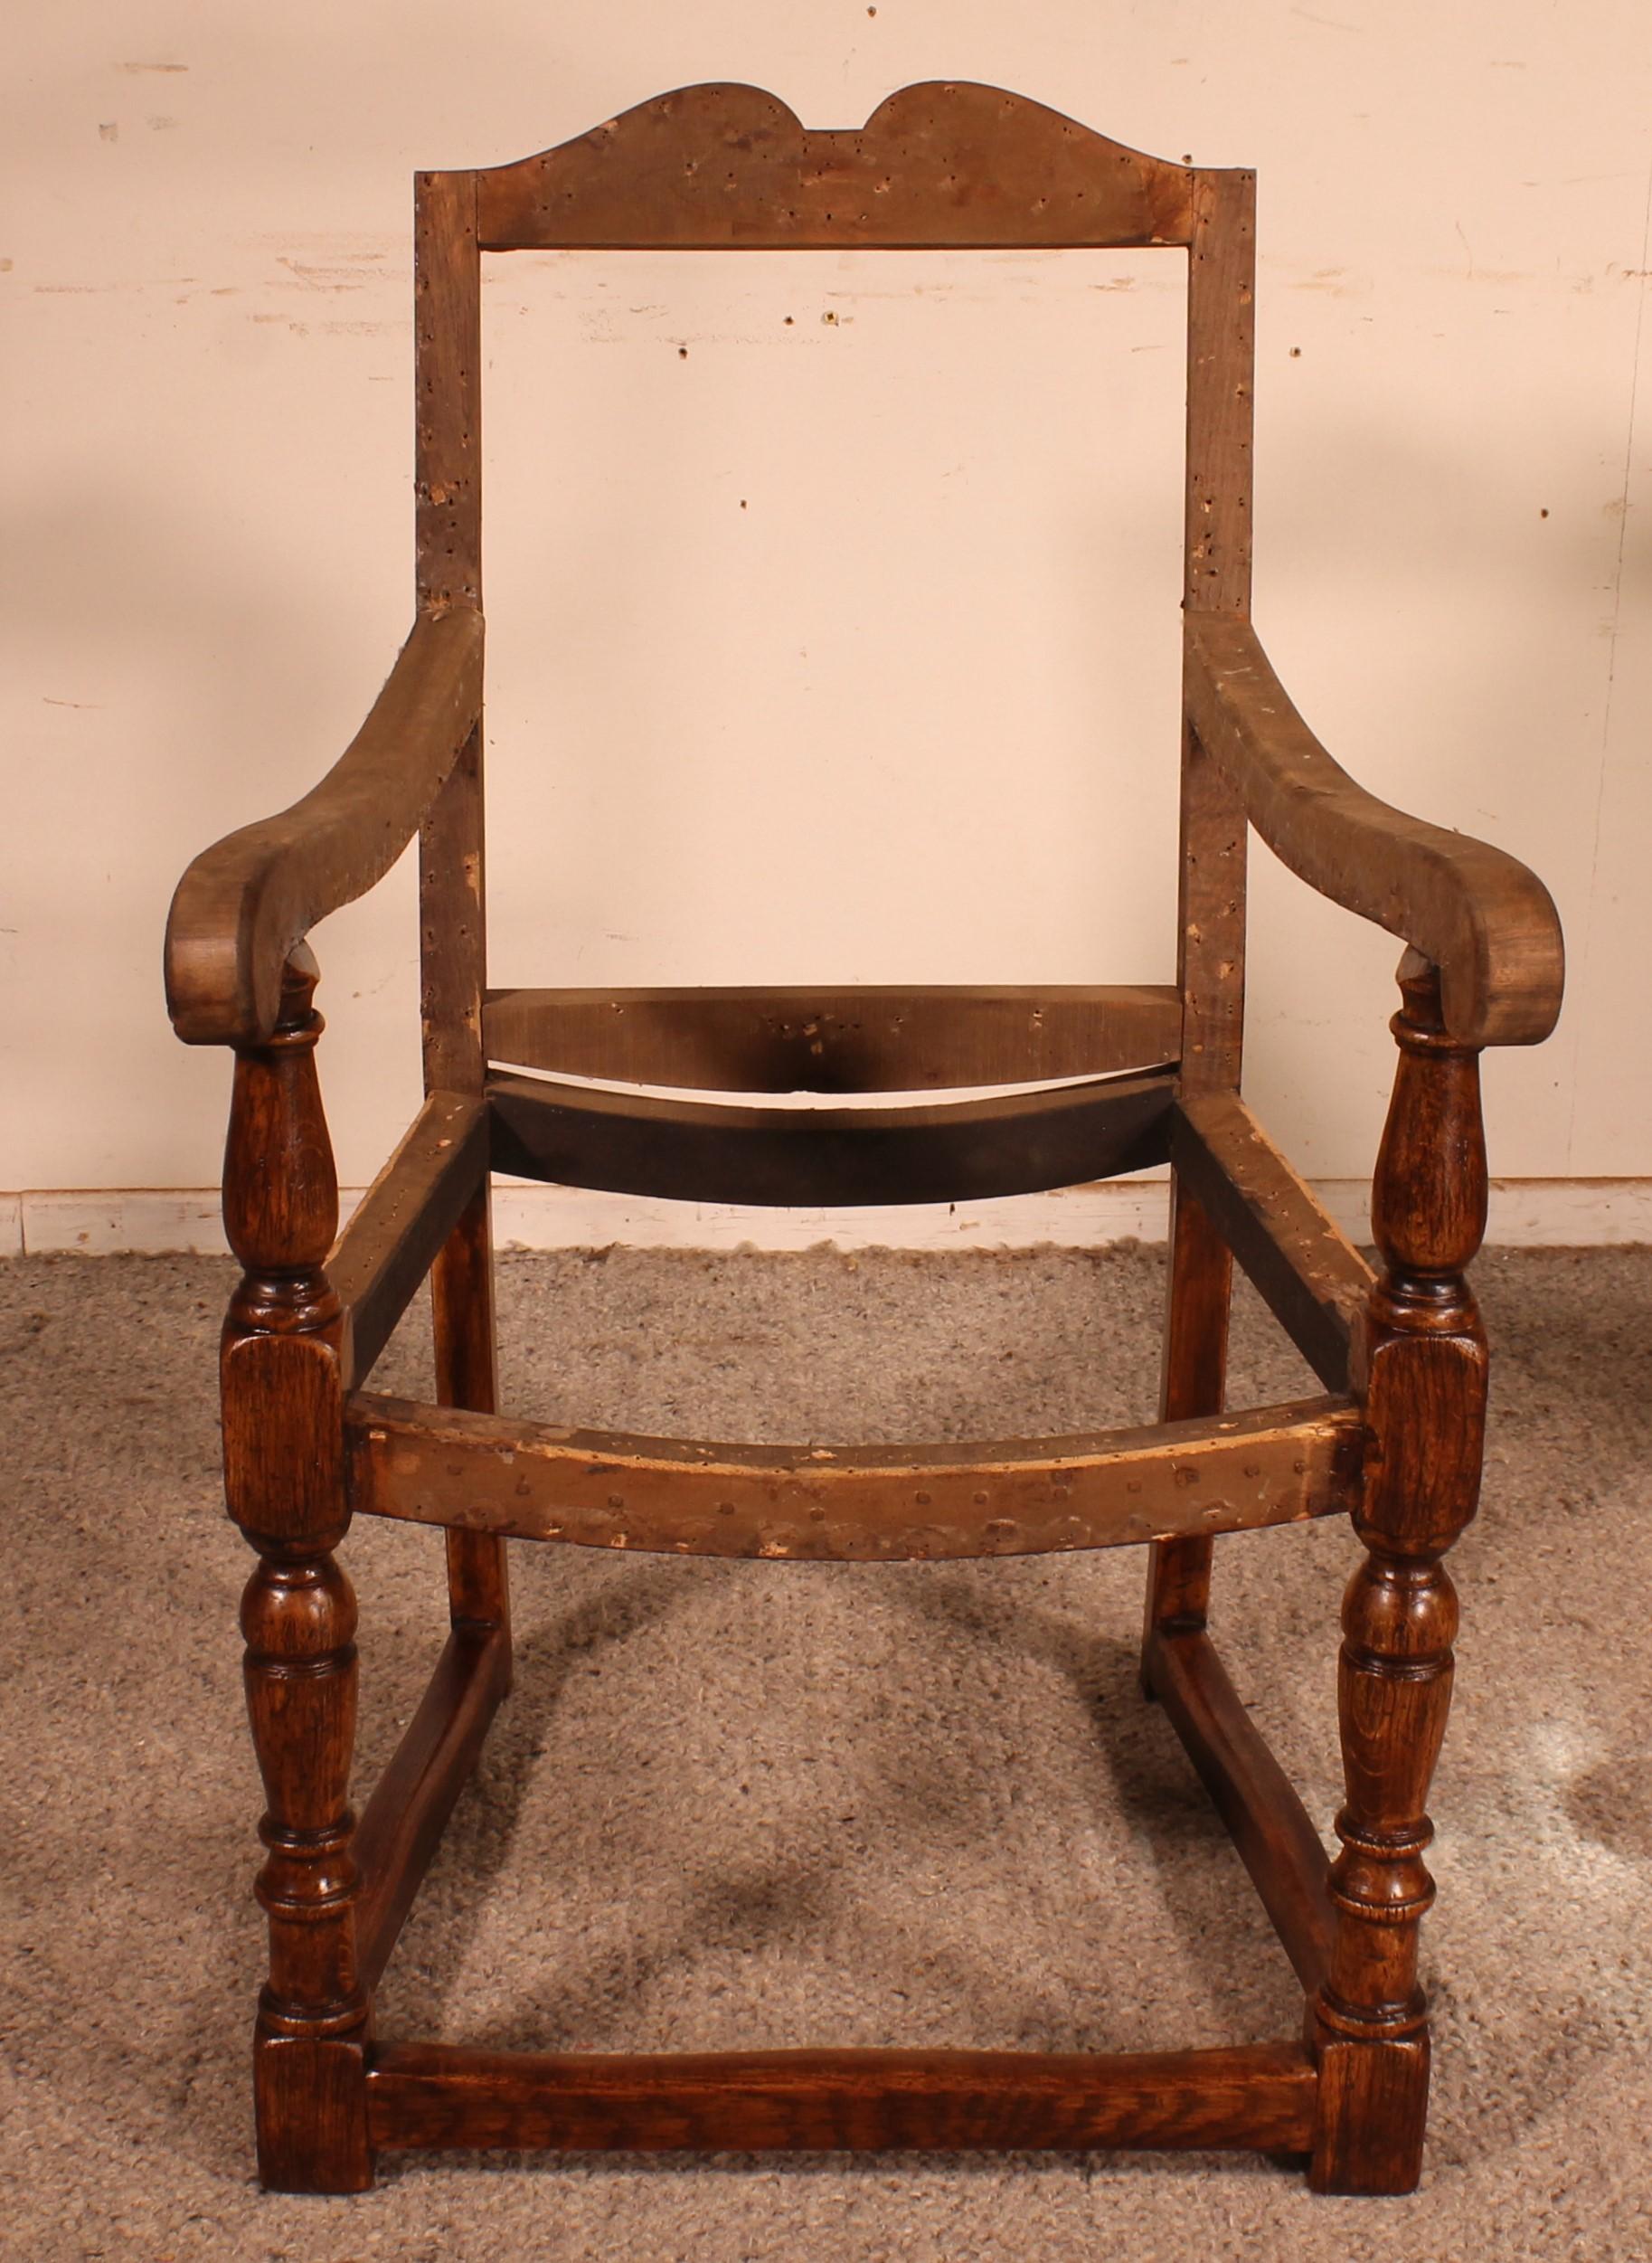 Superbe fauteuil anglais en chêne de la seconde moitié du XVIIIe siècle

Très beau fauteuil qui a été décapé et patiné dans nos ateliers.
En parfait état et très belle patine.

Nous avons décidé de ne pas le retapisser afin de laisser le choix au